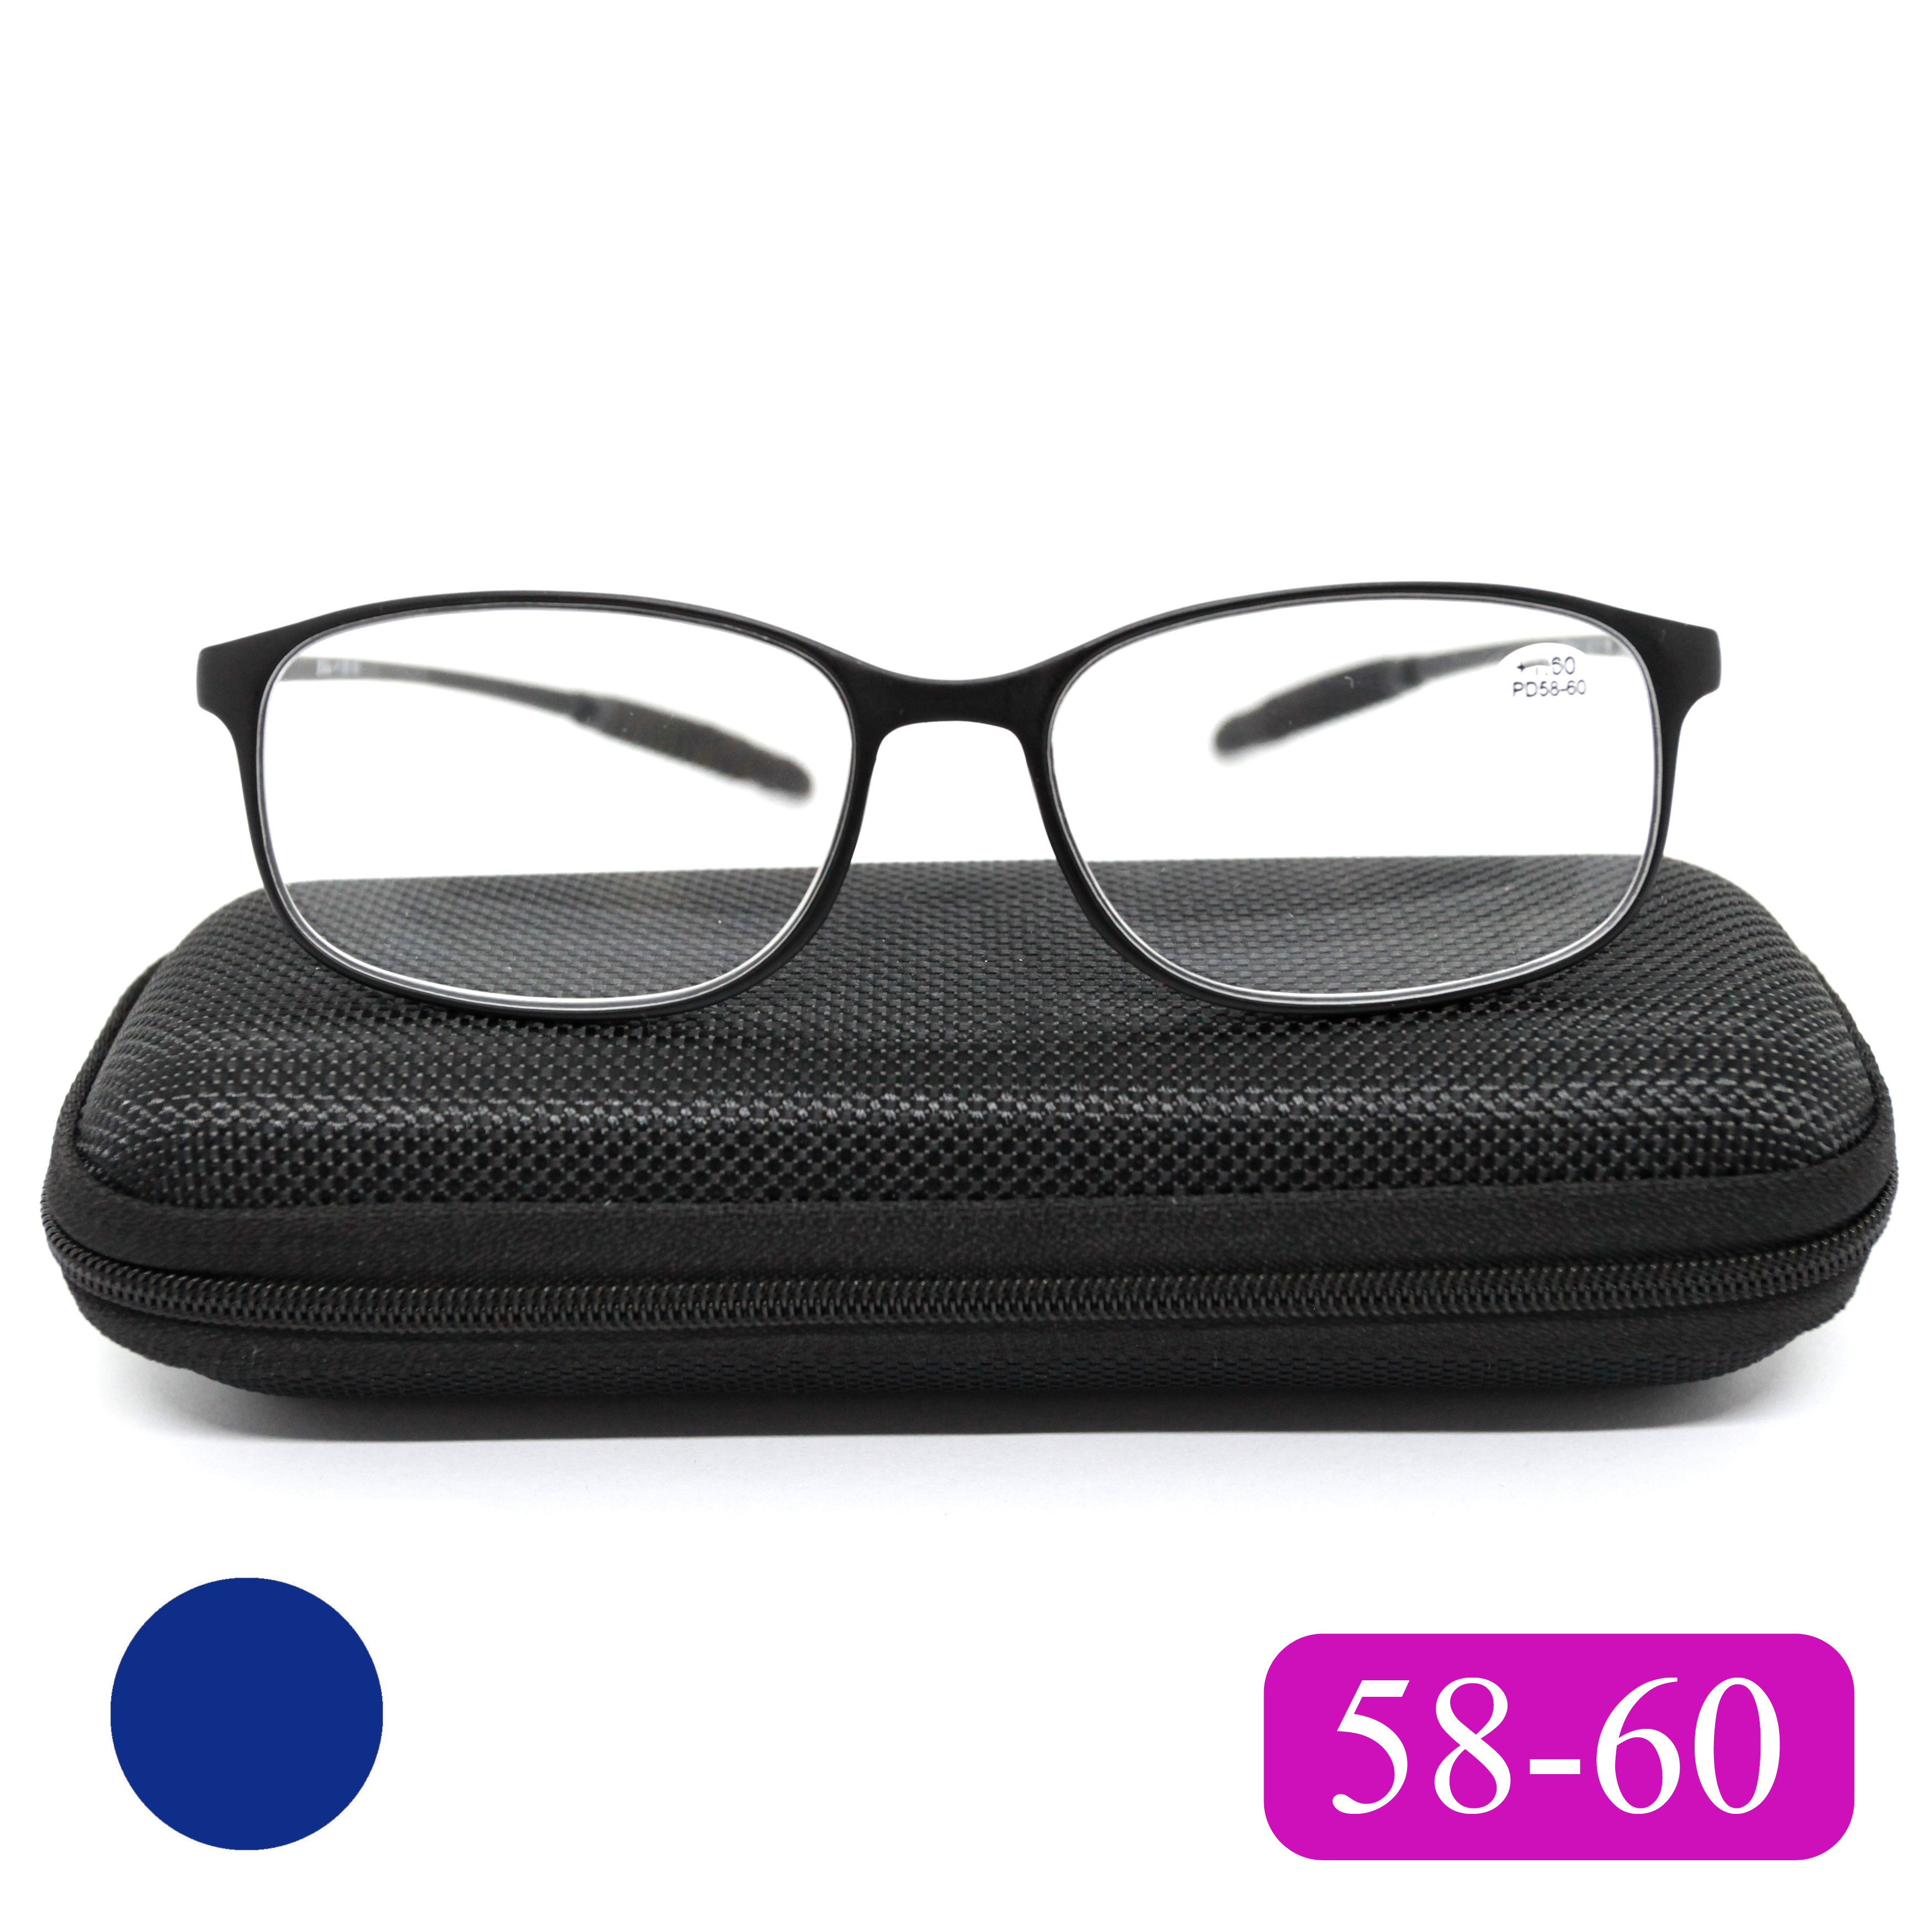 Готовые очки карбоновые TR259 +3,00, c футляром, сине-фиолетовый, РЦ 58-60